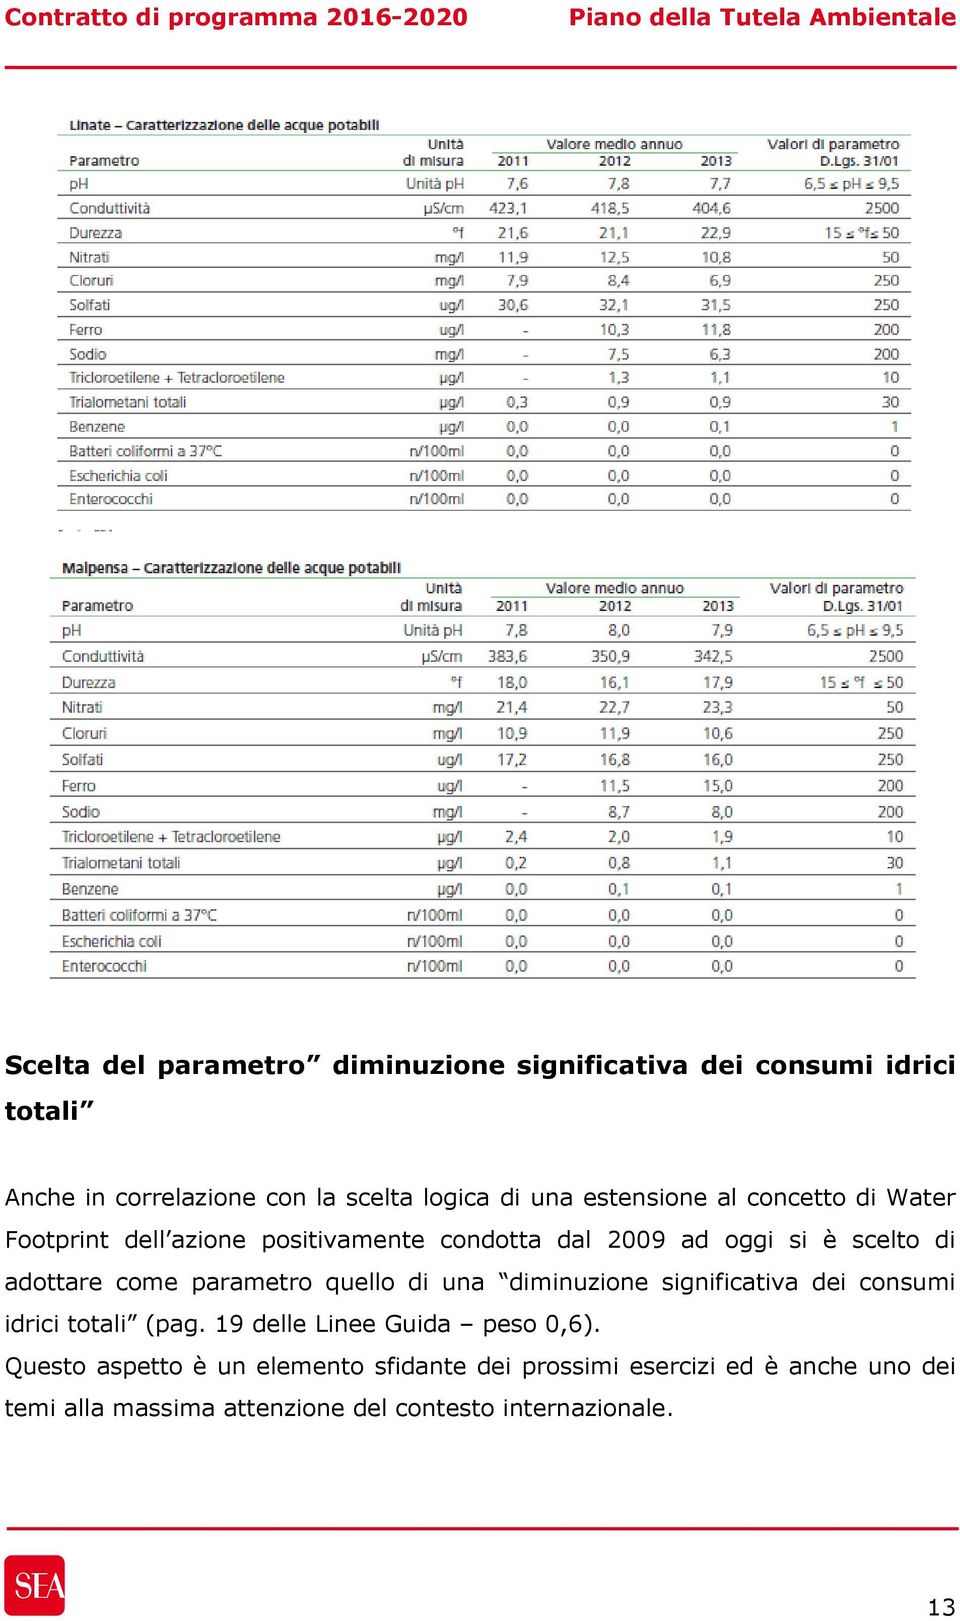 parametro quello di una diminuzione significativa dei consumi idrici totali (pag. 19 delle Linee Guida peso 0,6).